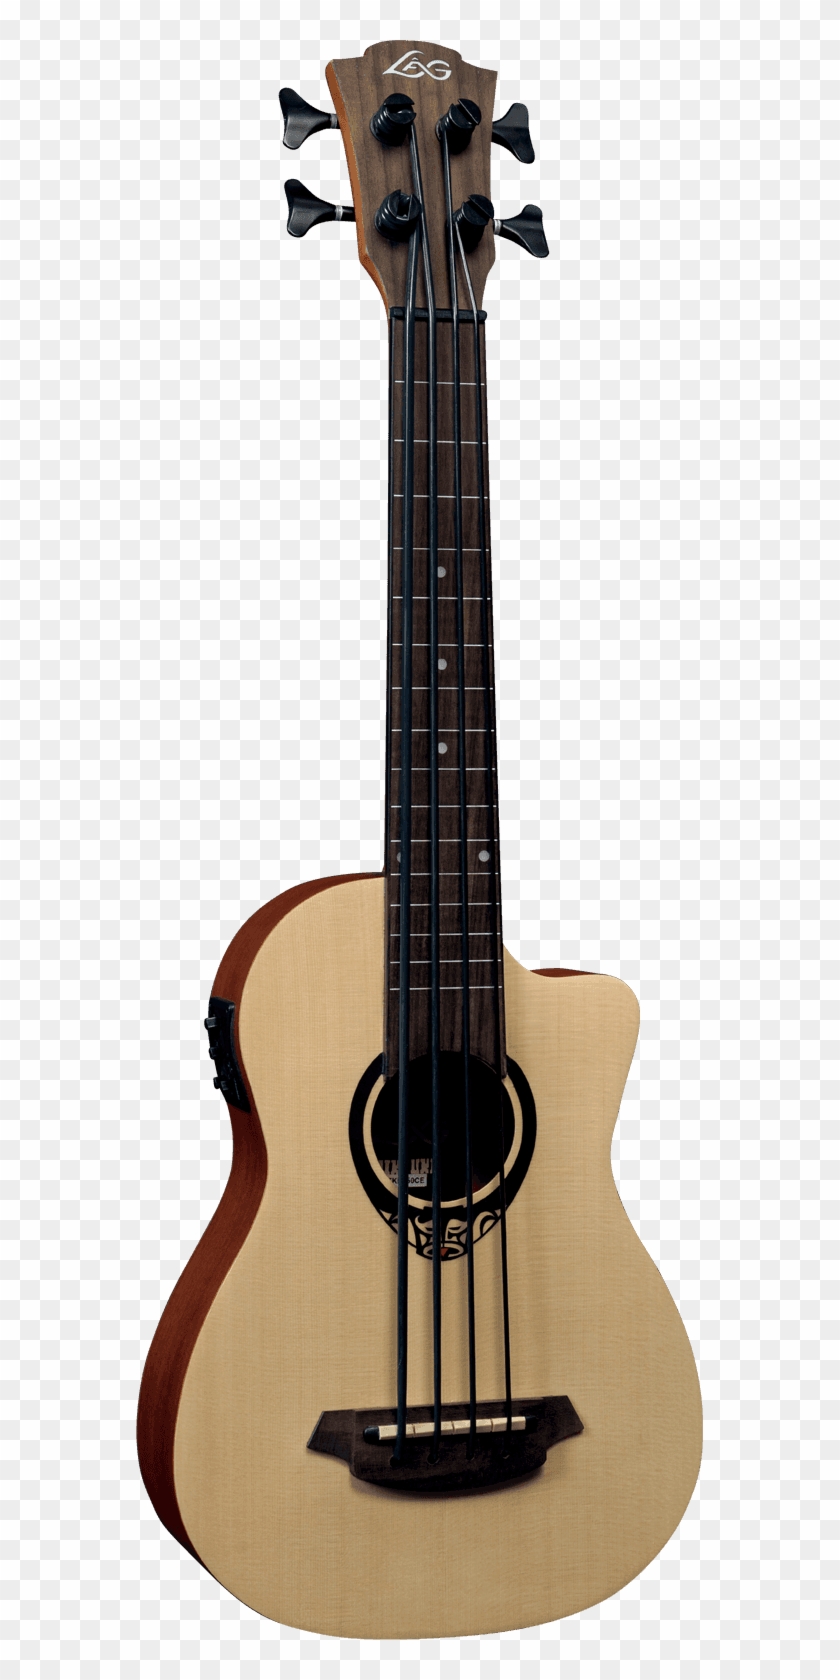 Lâg Tiki 150 Tkb150ce - Guitar Clipart #4269408